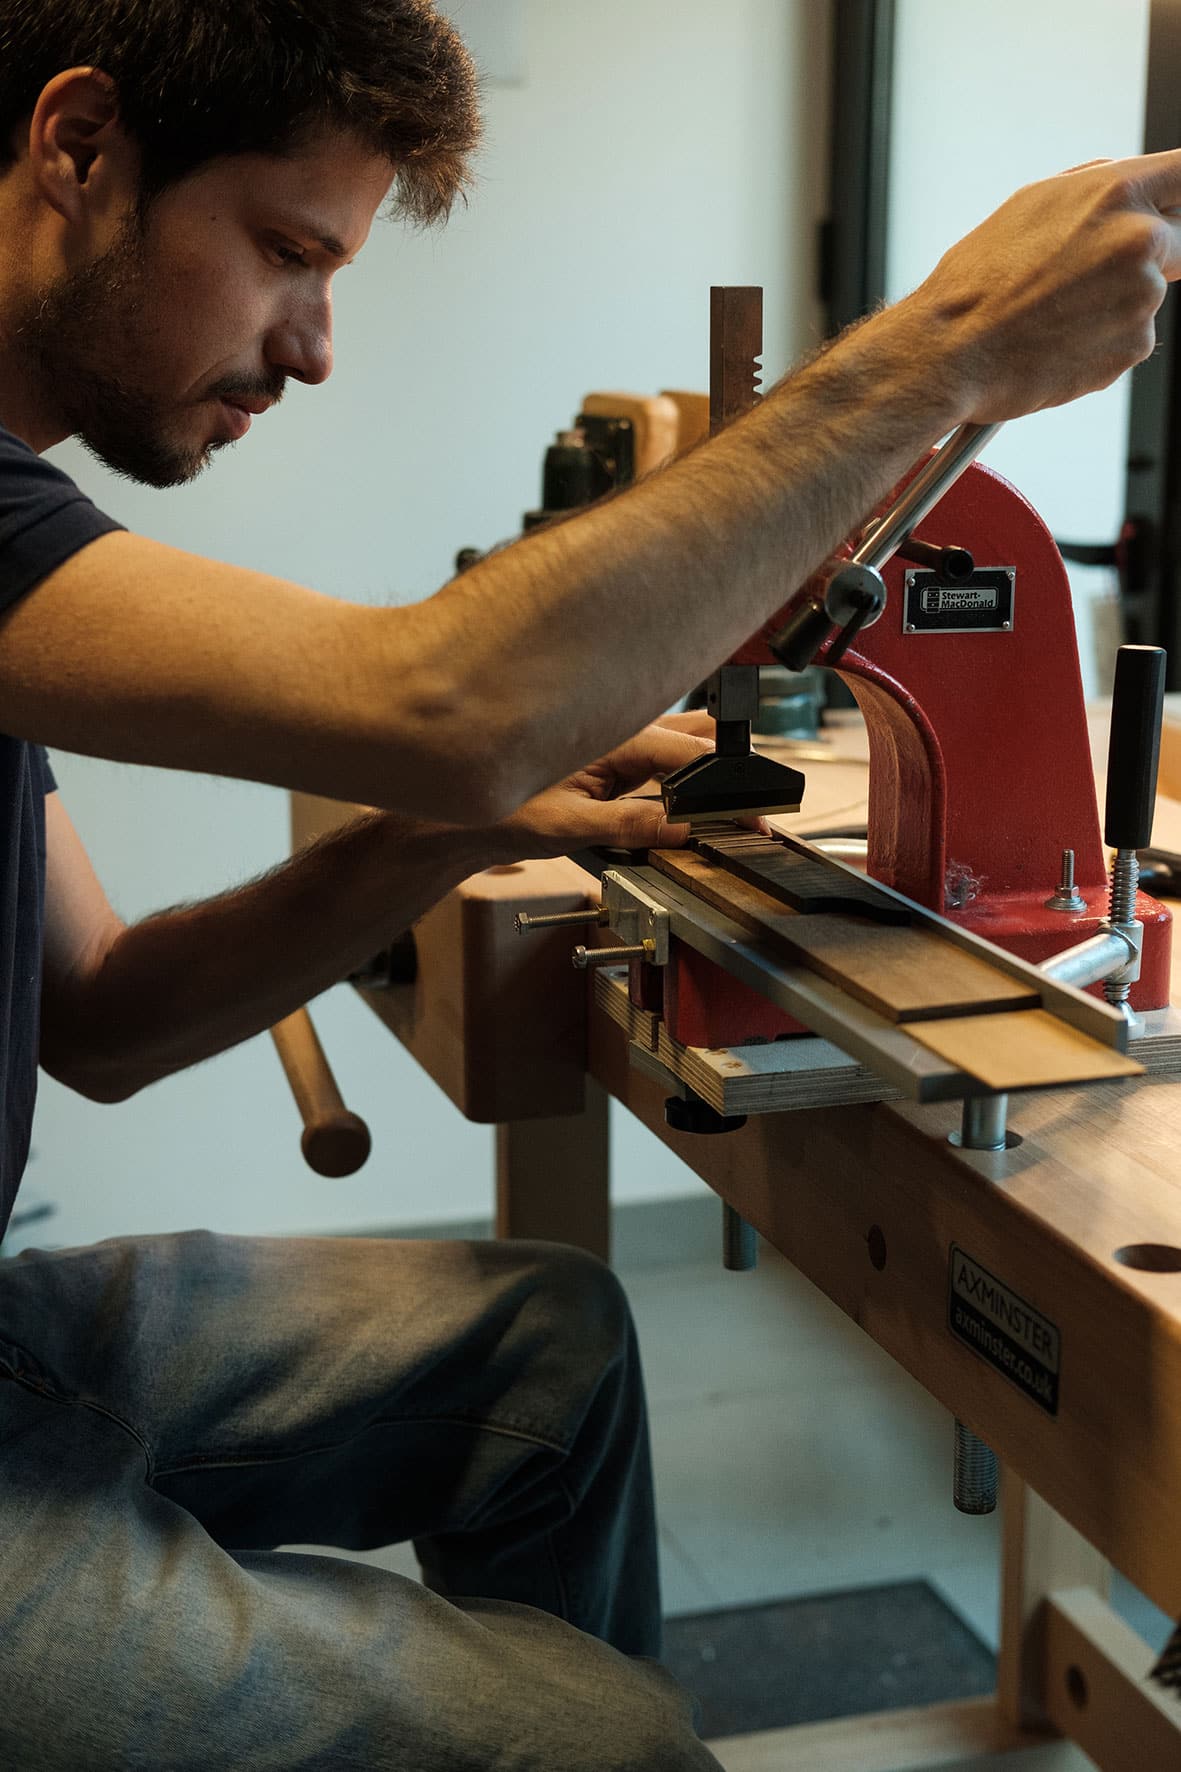 Artista Leonardo Afonso trabalha no seu atelier com maquinaria.